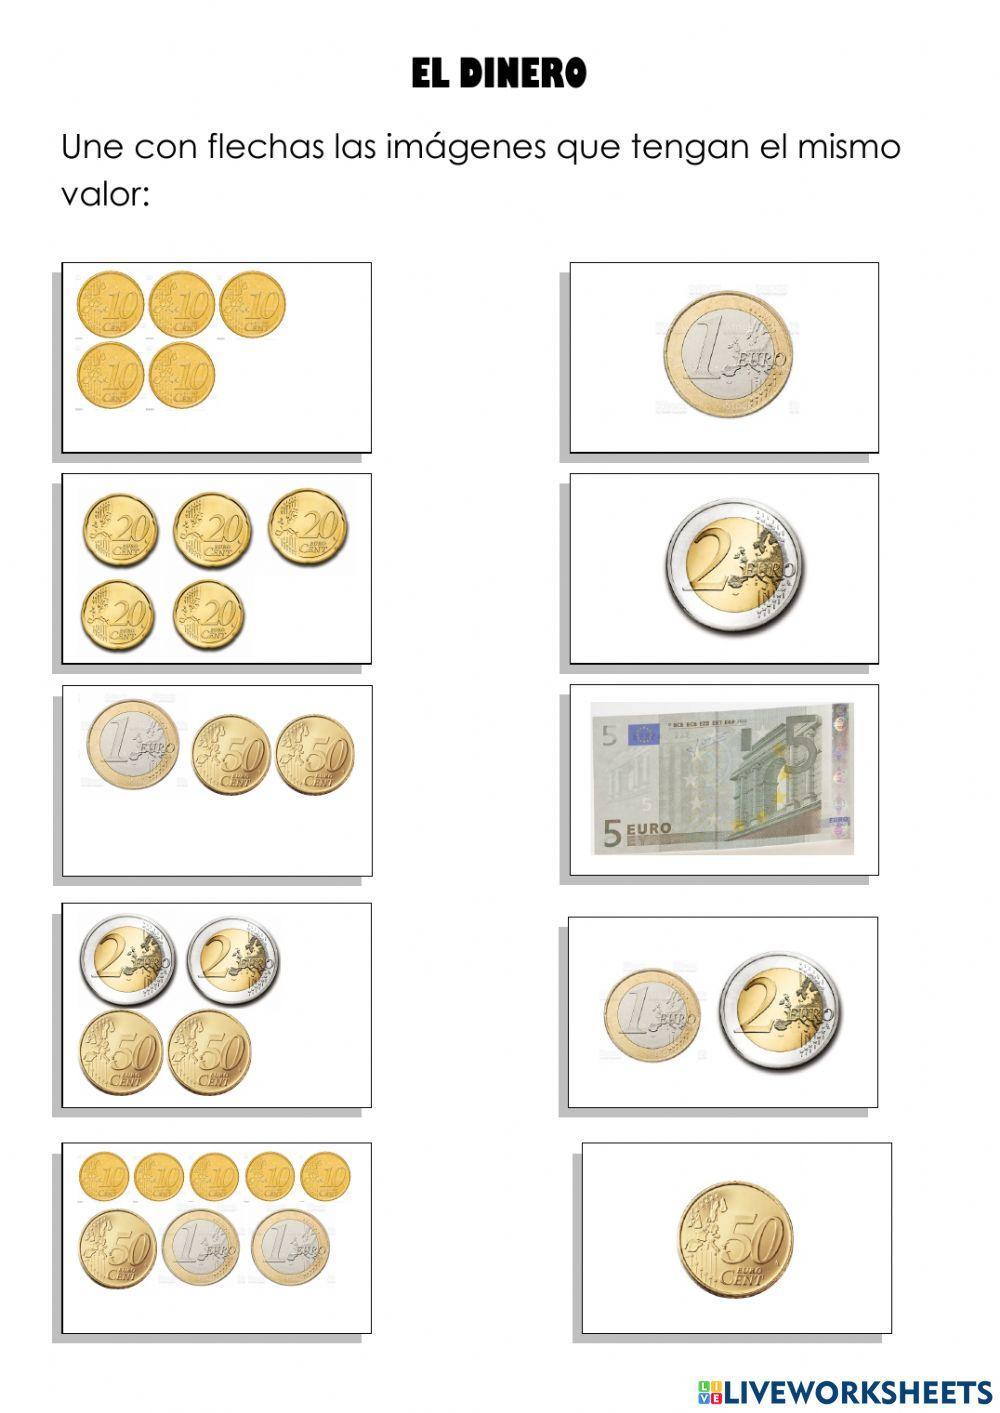 Céntimos y euros